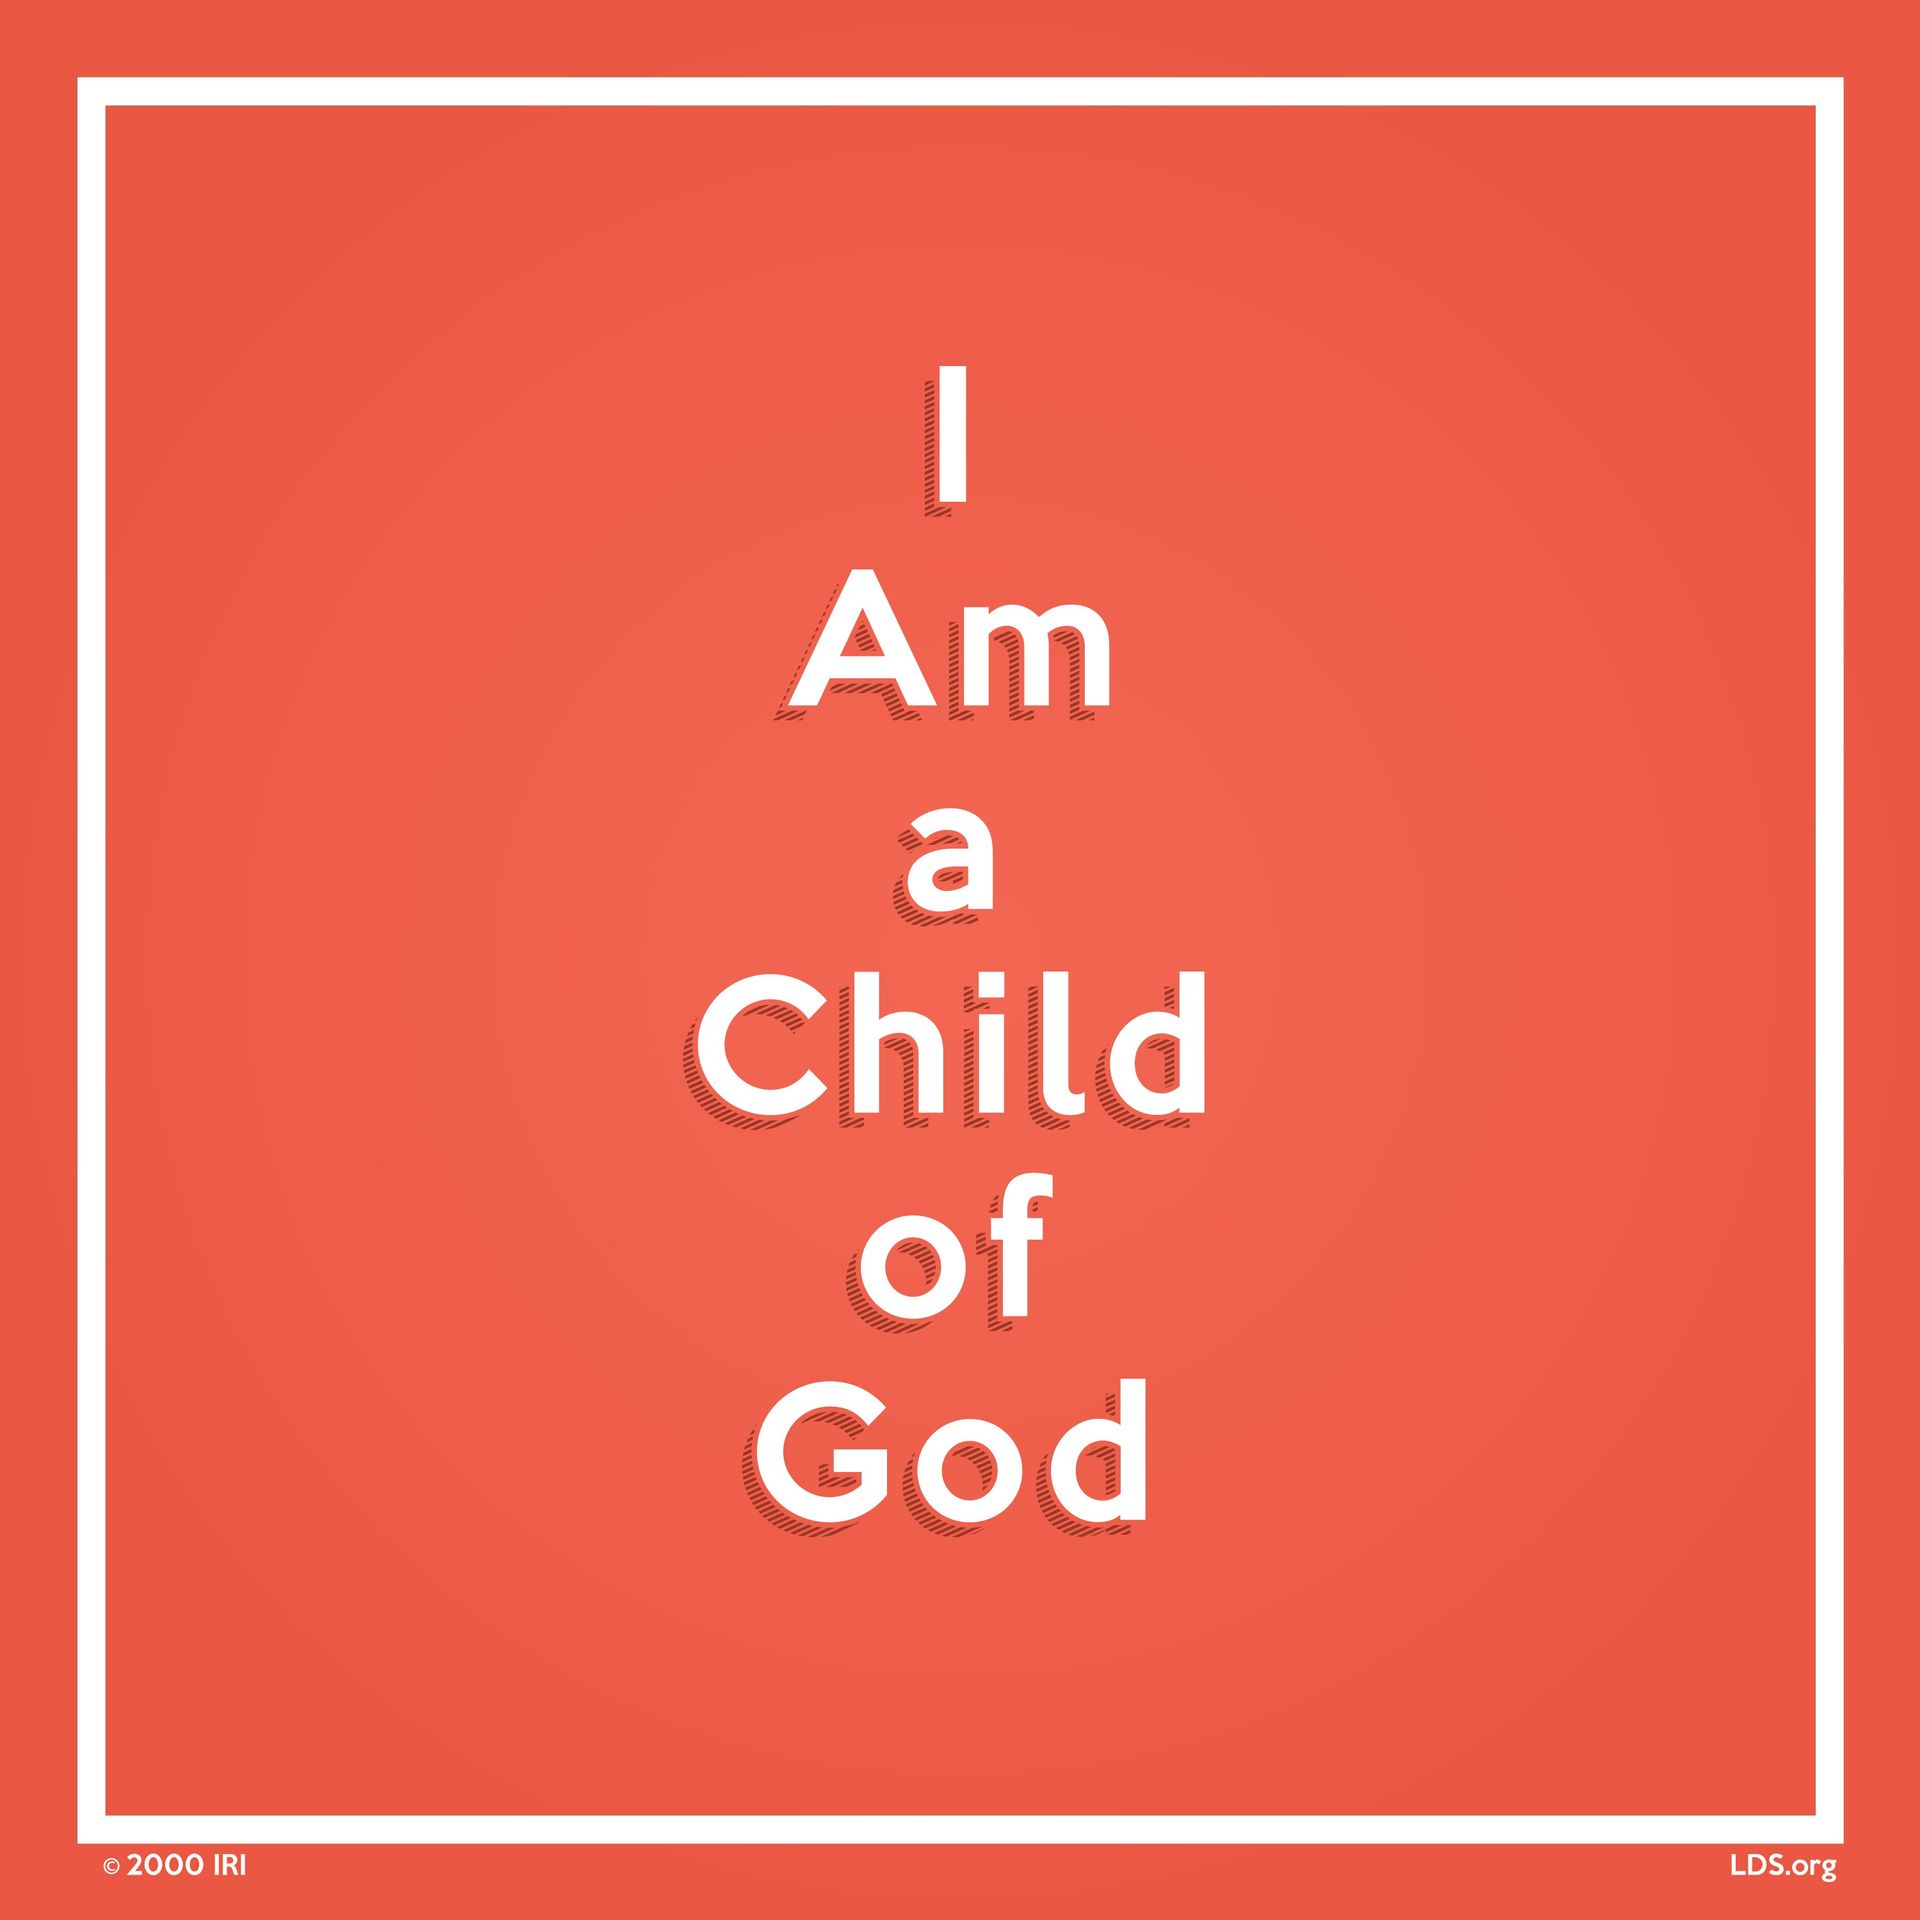 “I am a child of God.” —Hymns, no. 301, “I Am a Child of God”